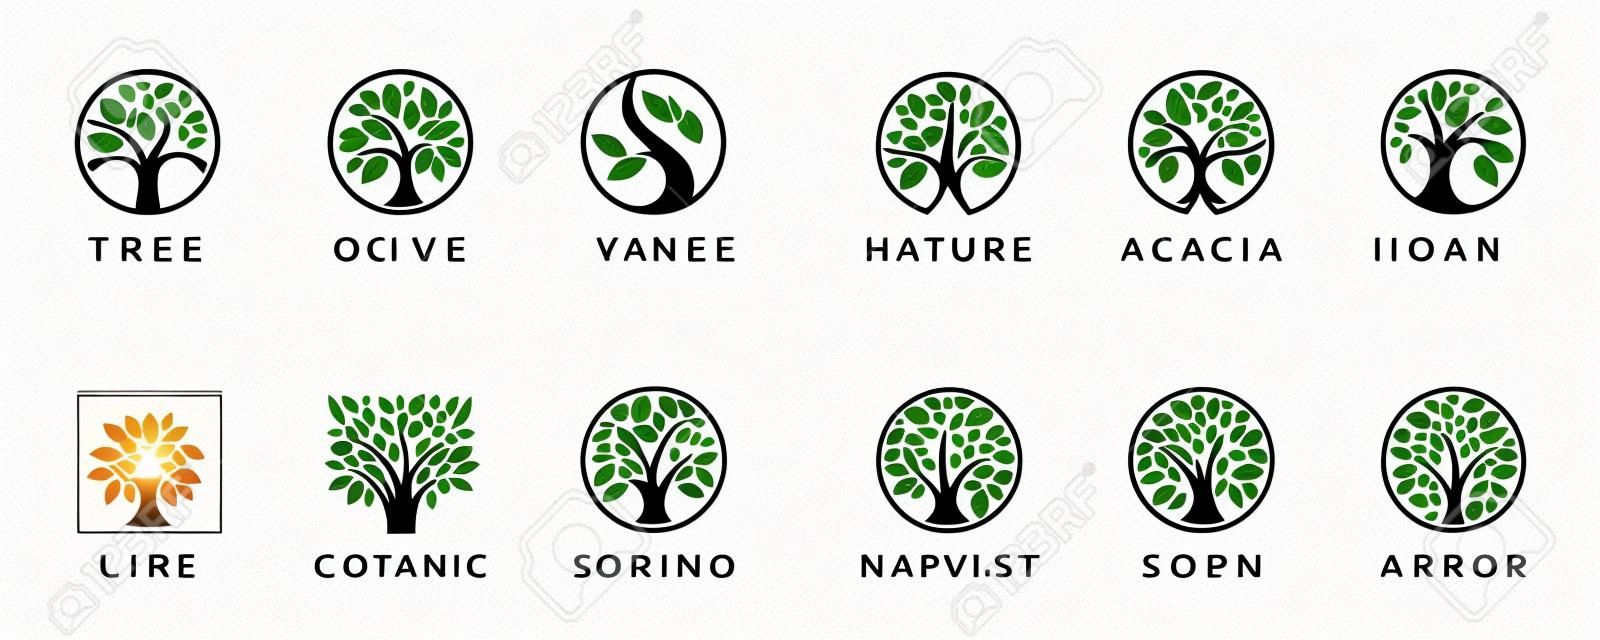 Abstract Boom van het leven logo iconen set. Botanische plant natuur symbolen. Boomtak met bladeren tekens. Natuurlijke design elementen embleem collectie. Vector illustratie.